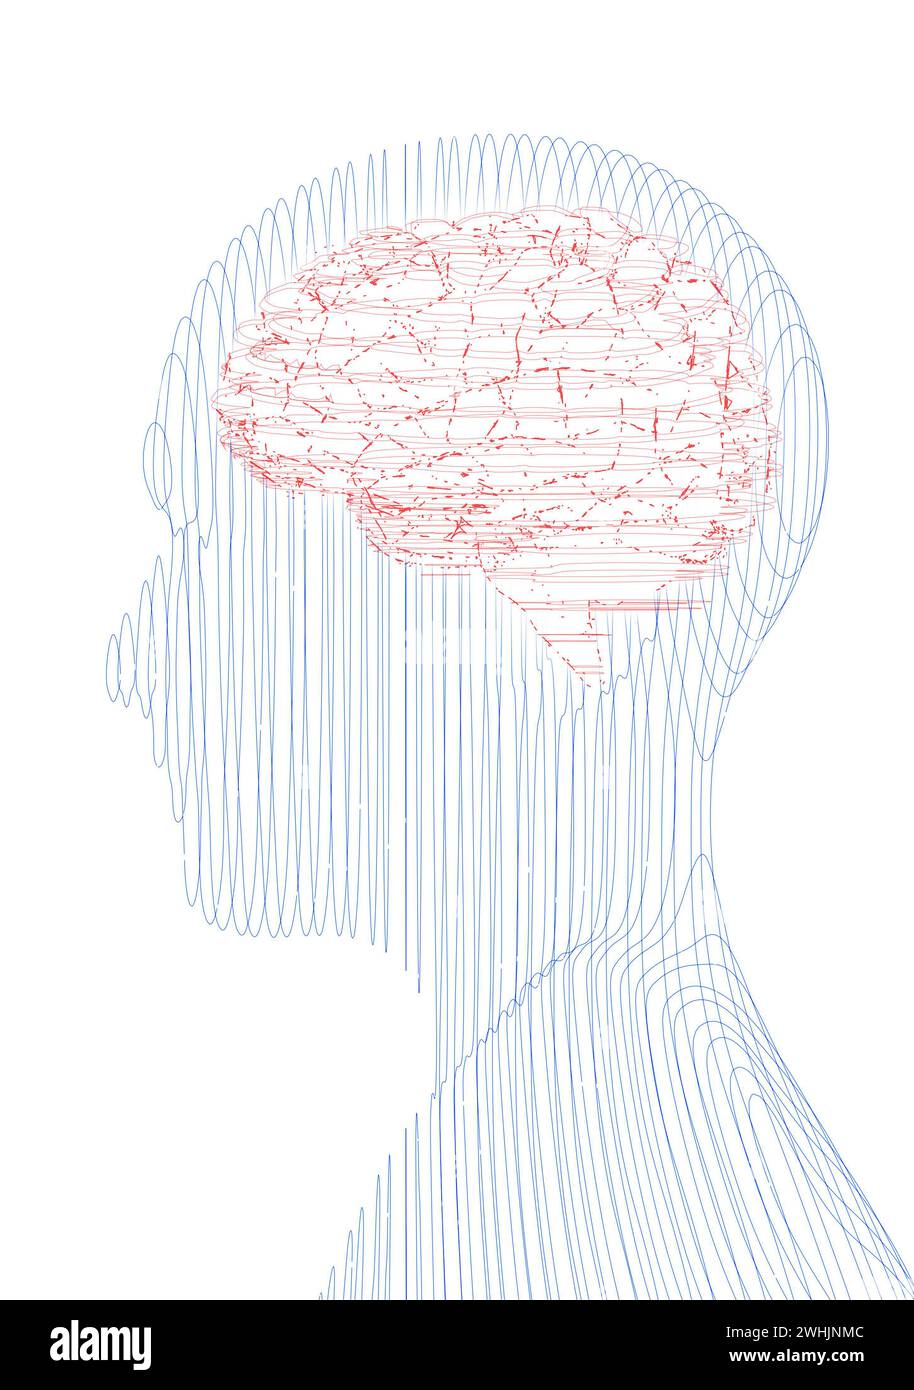 Neurologia, filosofia: Connessioni, sviluppo del pensiero e della riflessione, infinite possibilità del cervello e della mente. Anatomia umana. Uomo Foto Stock